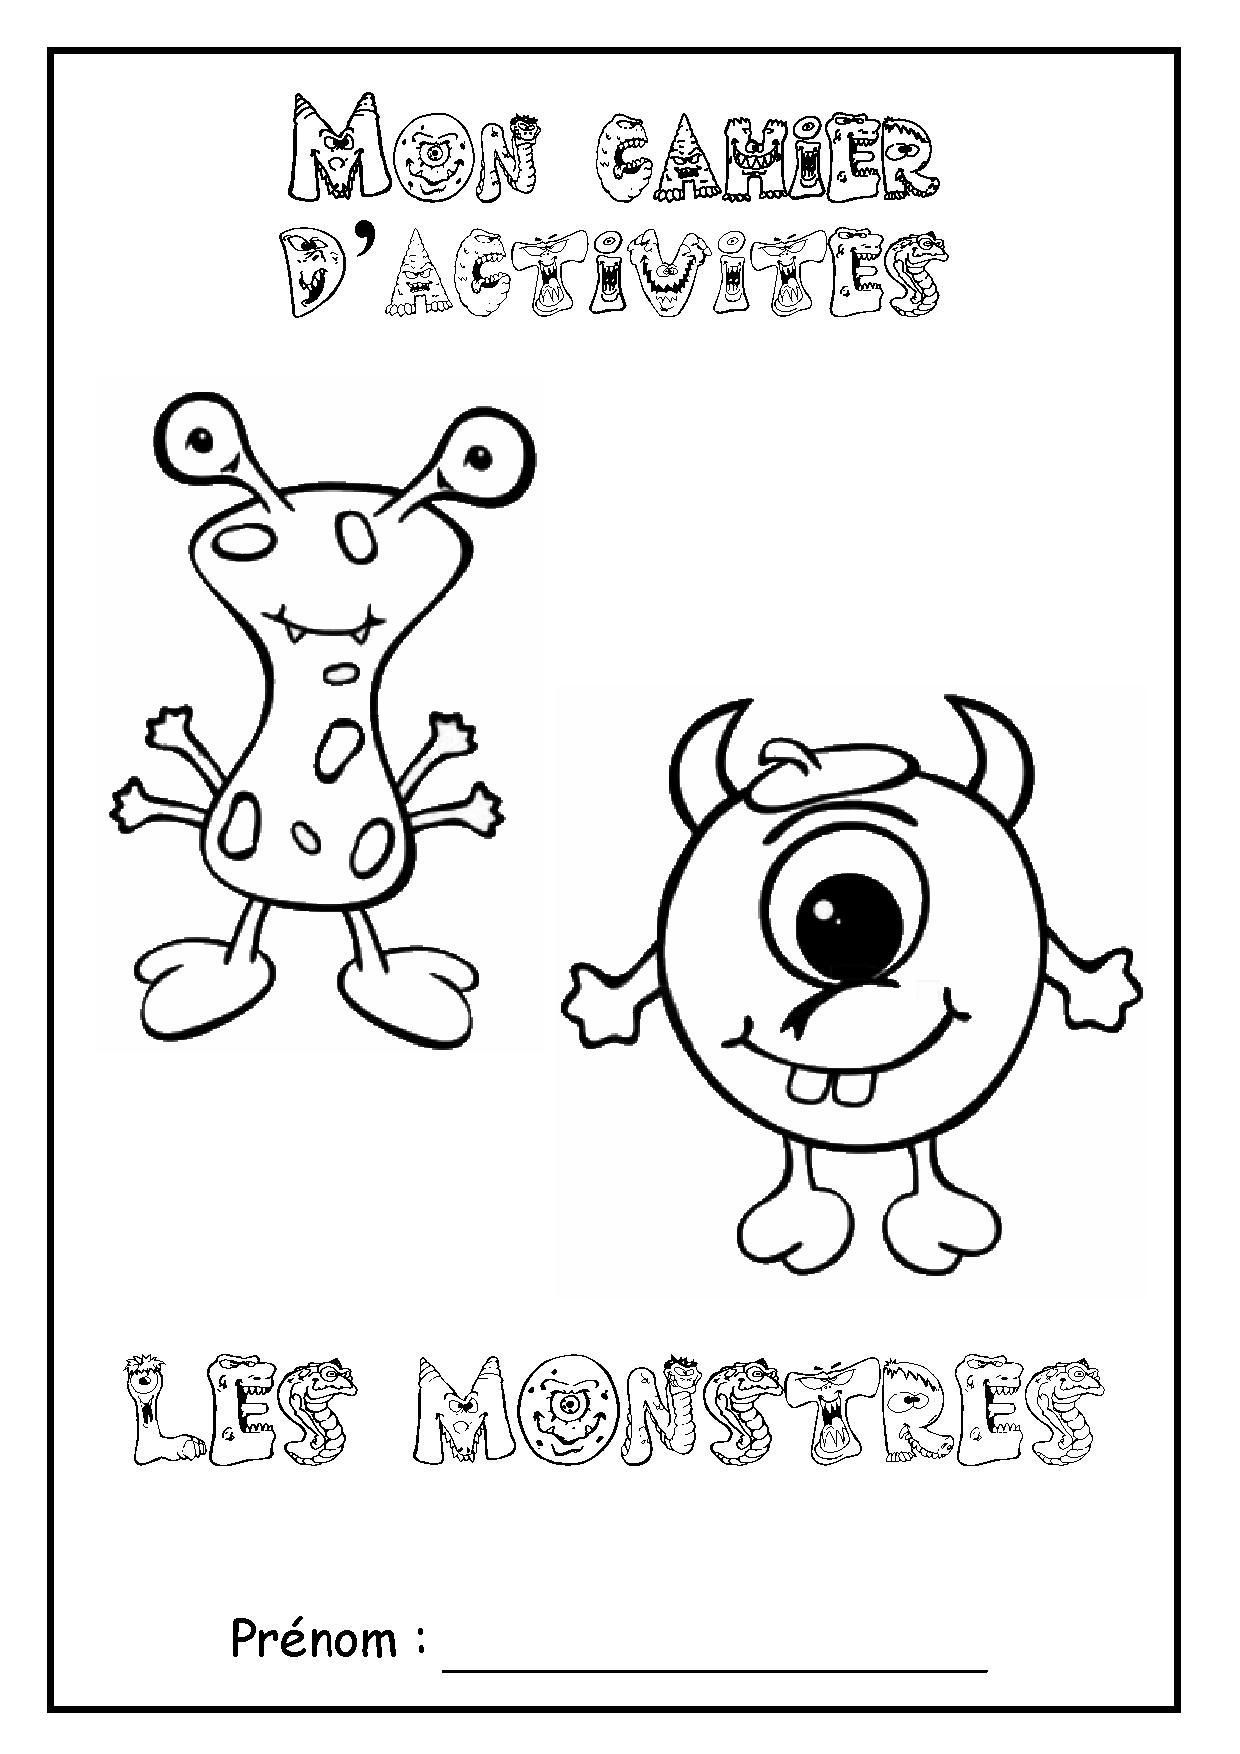 Page De Garde Cahier D&amp;#039;Activités &amp;quot; Les Monstres tout Cahier Coloriage A Imprimer